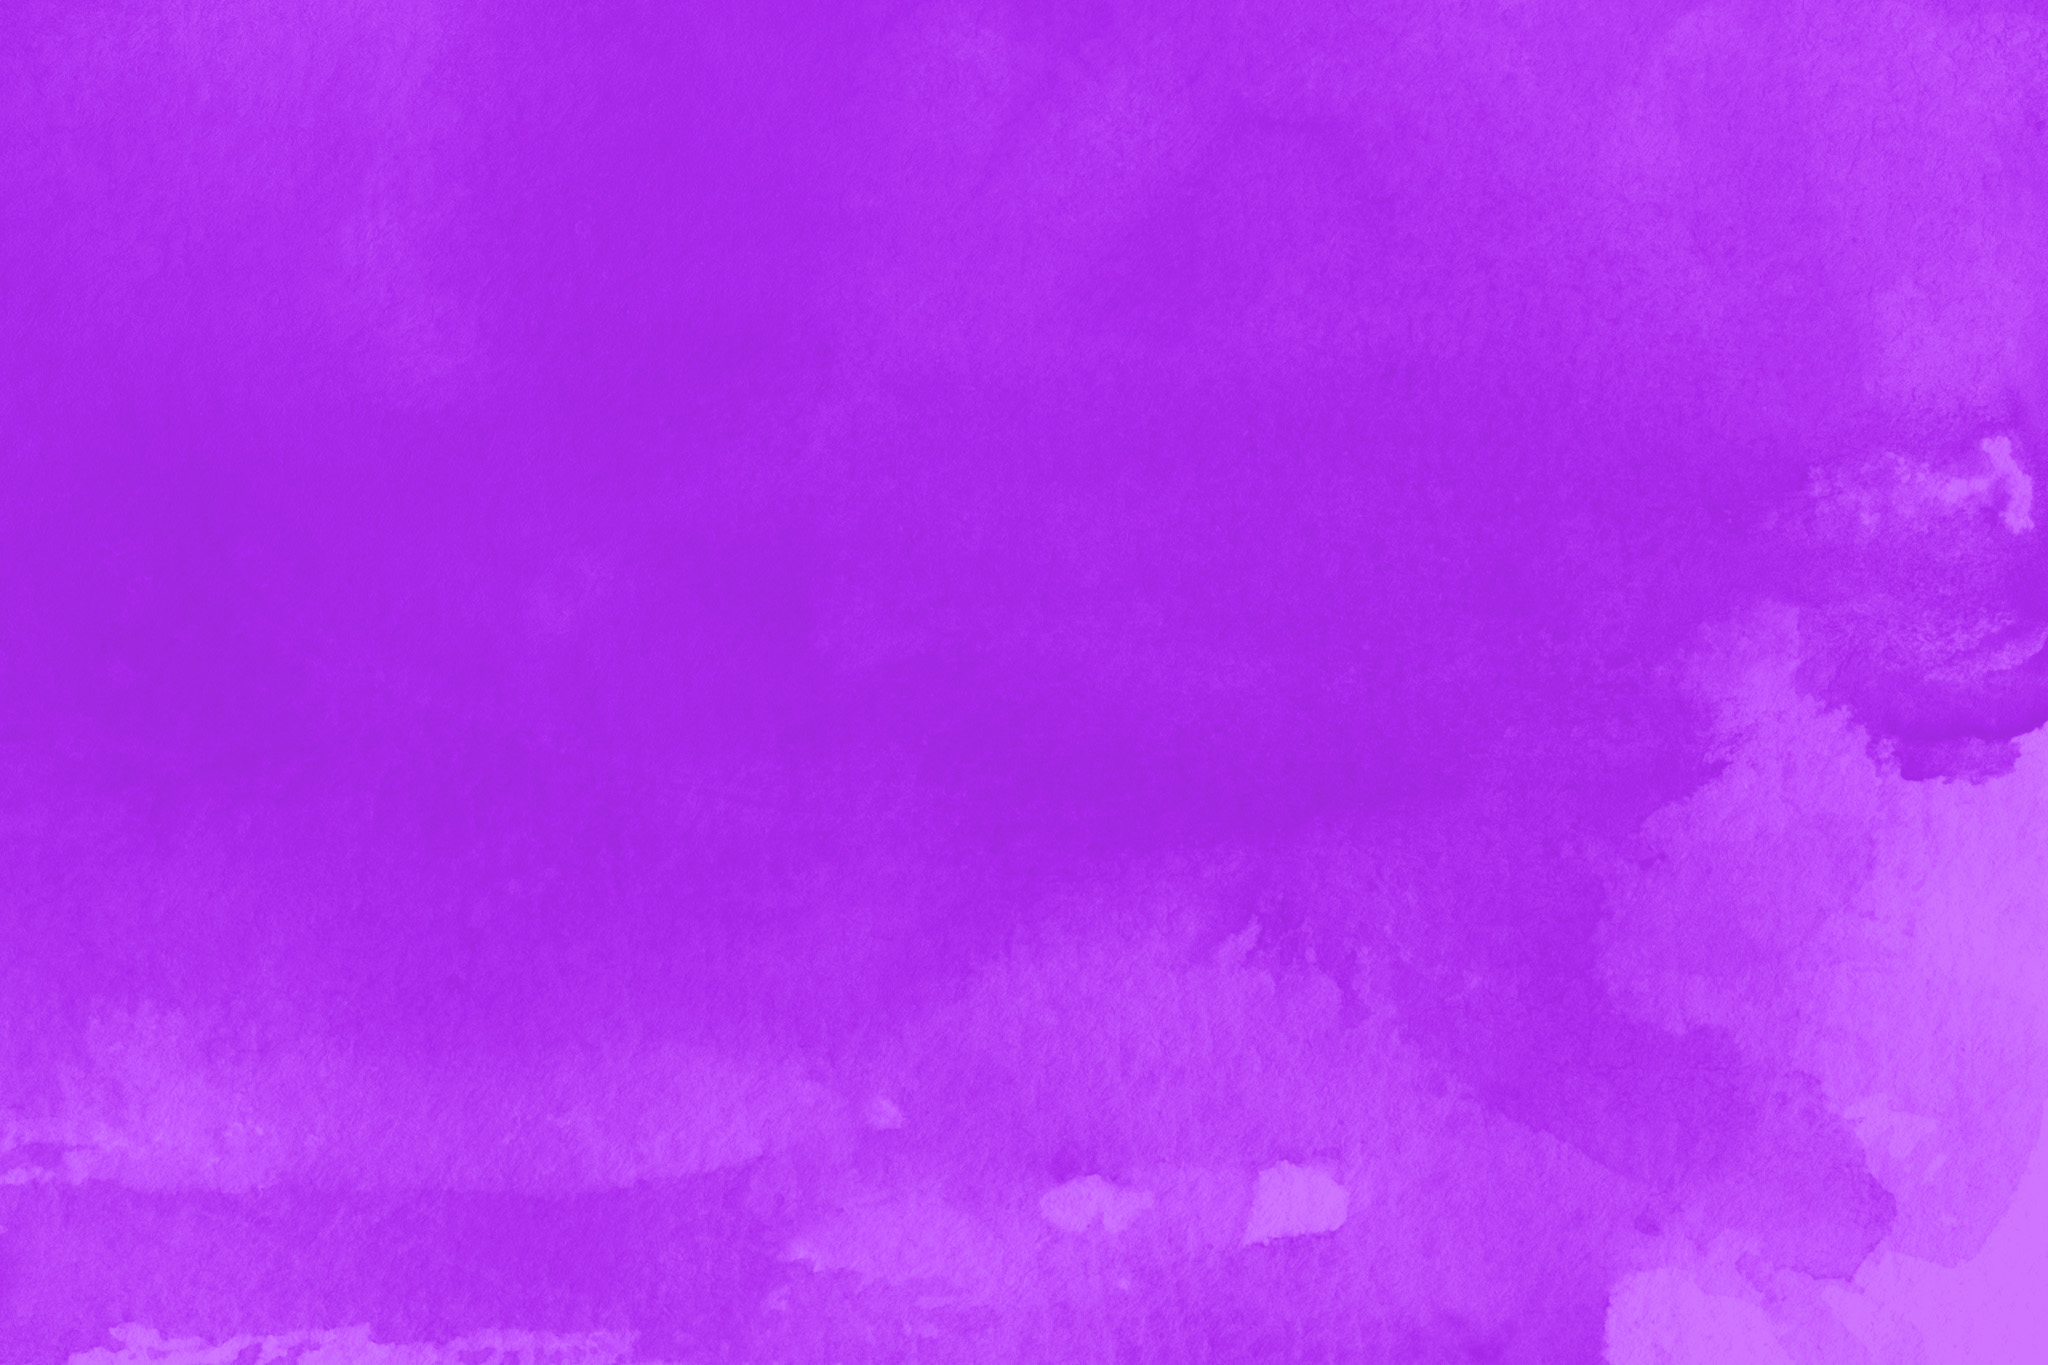 おしゃれな紫のかっこいい壁紙 の画像素材を無料ダウンロード 1 フリー素材 Beiz Images